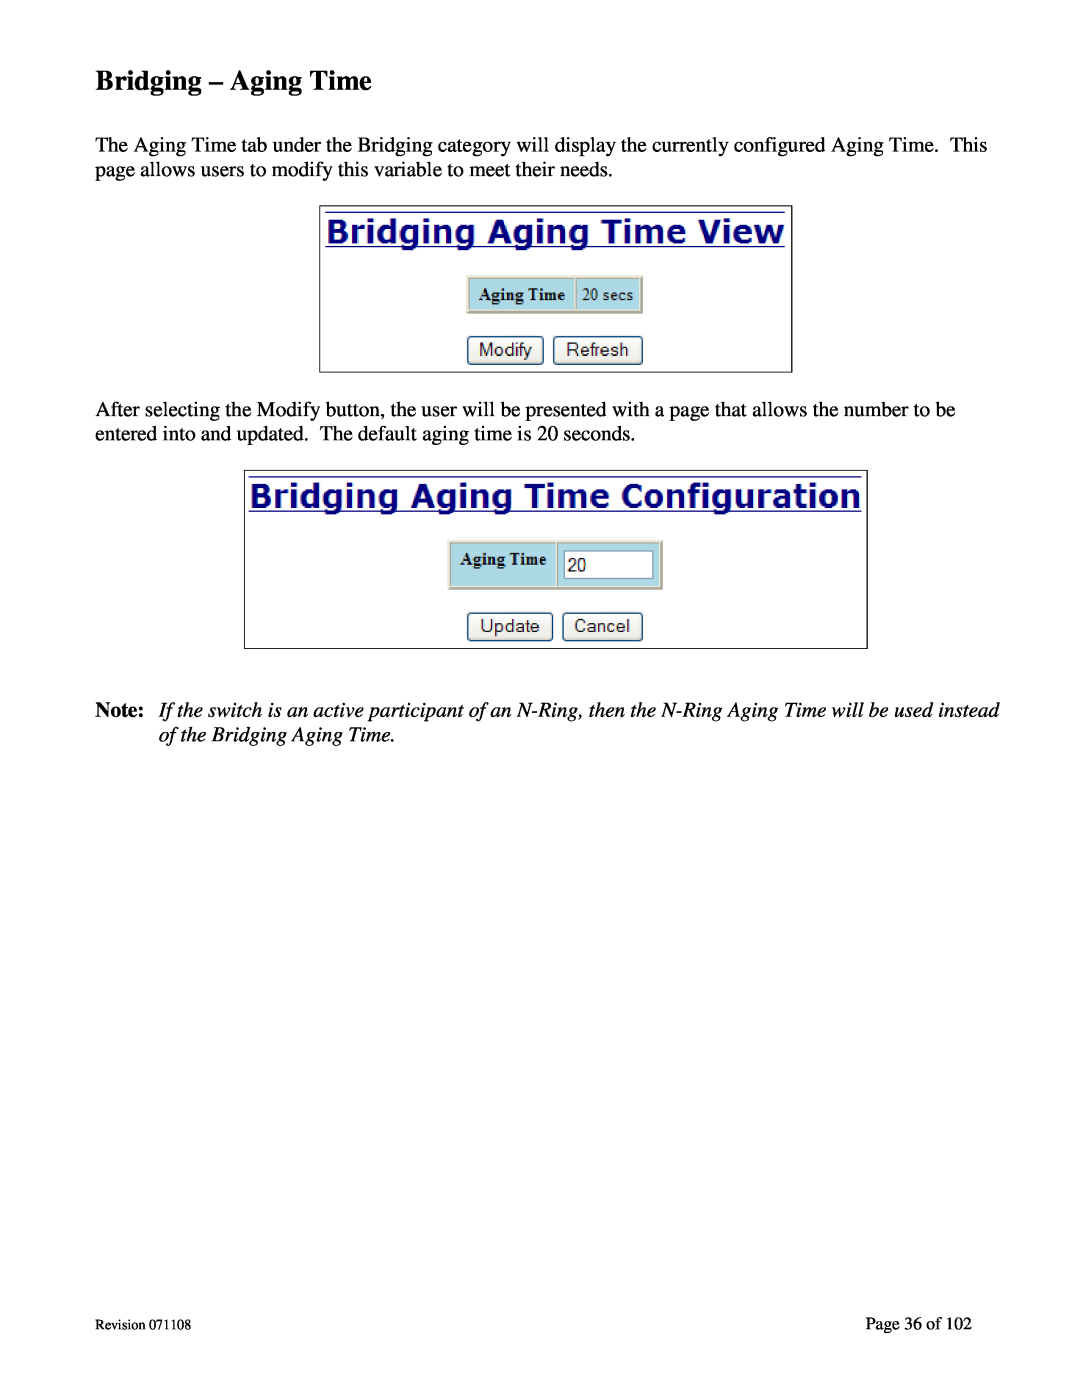 N-Tron 708M12 user manual Bridging - Aging Time, Page 36 of 